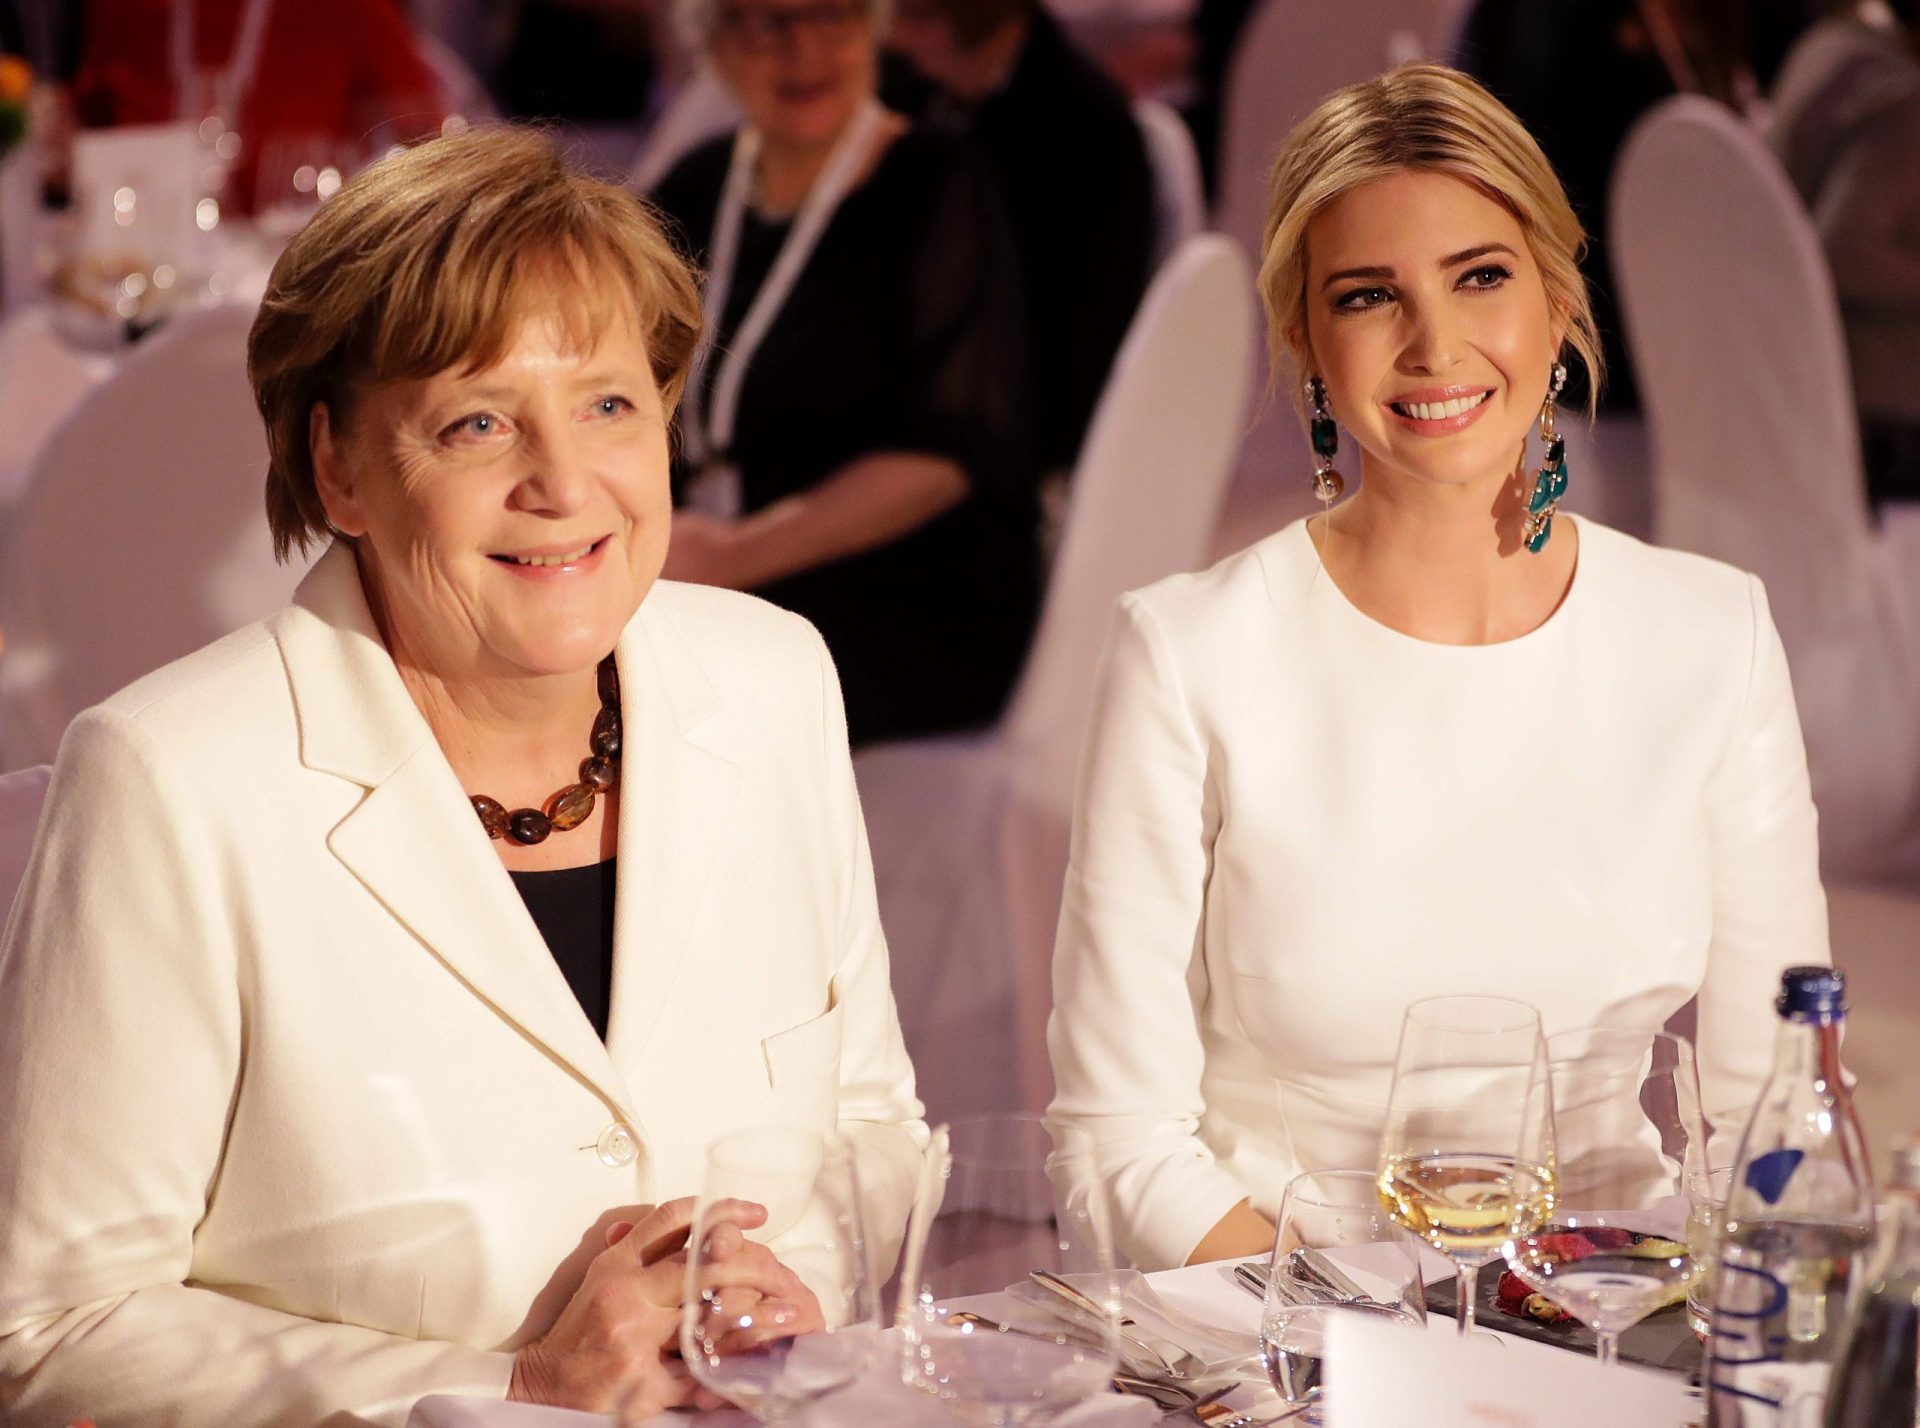 Berlim. Ivanka defende o pai em evento com Merkel e Lagarde